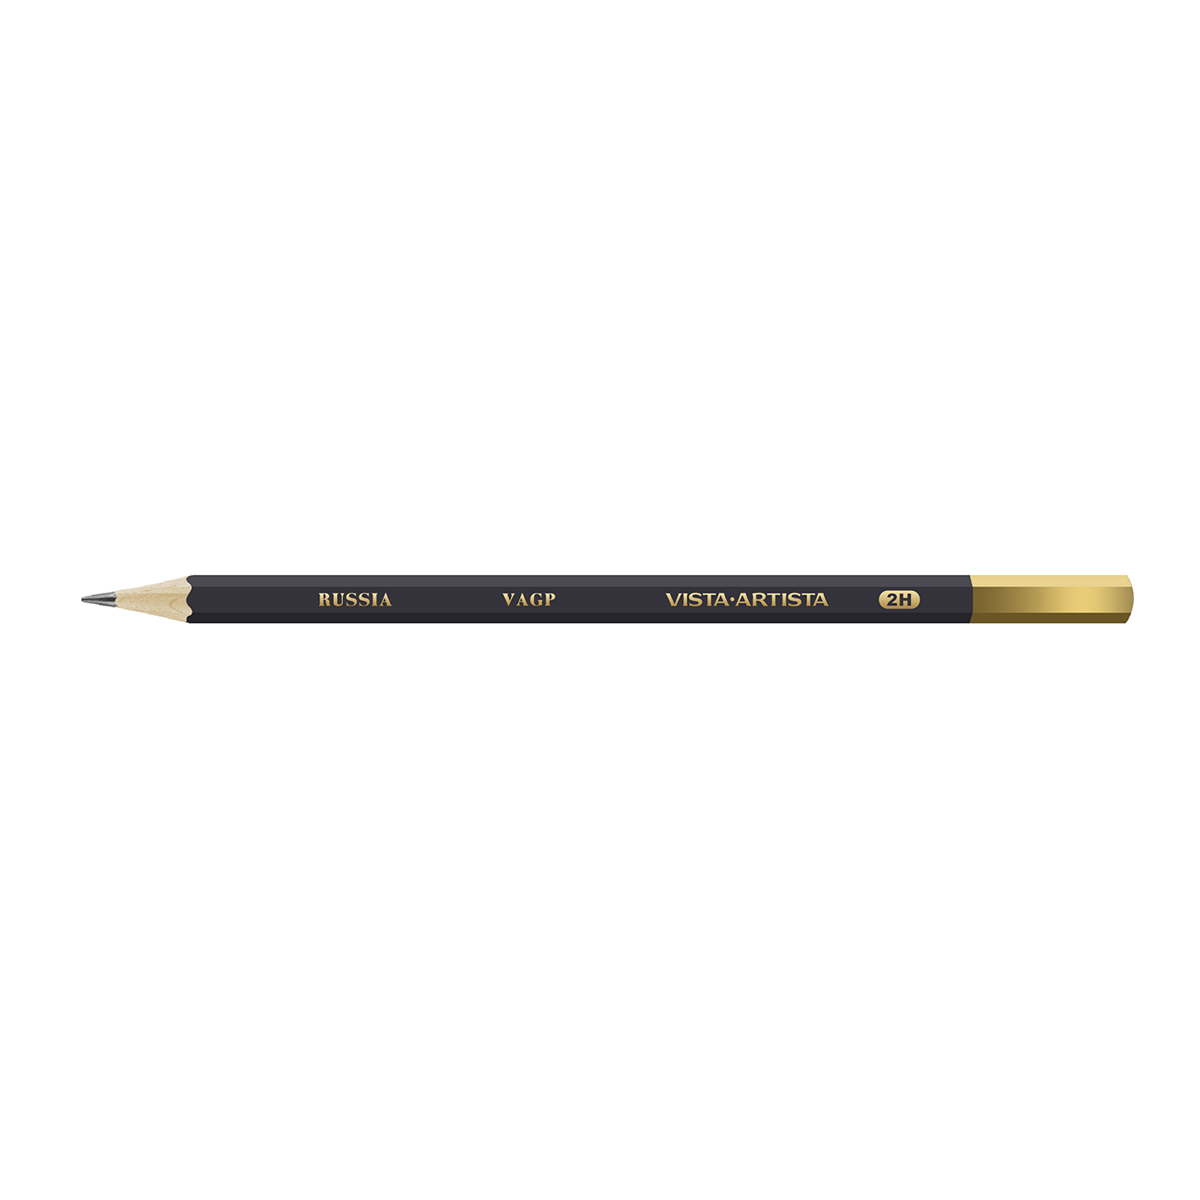 VISTA-ARTISTA VAGP Чернографитный карандаш заточенный 2Т (2H) . Фото 1.